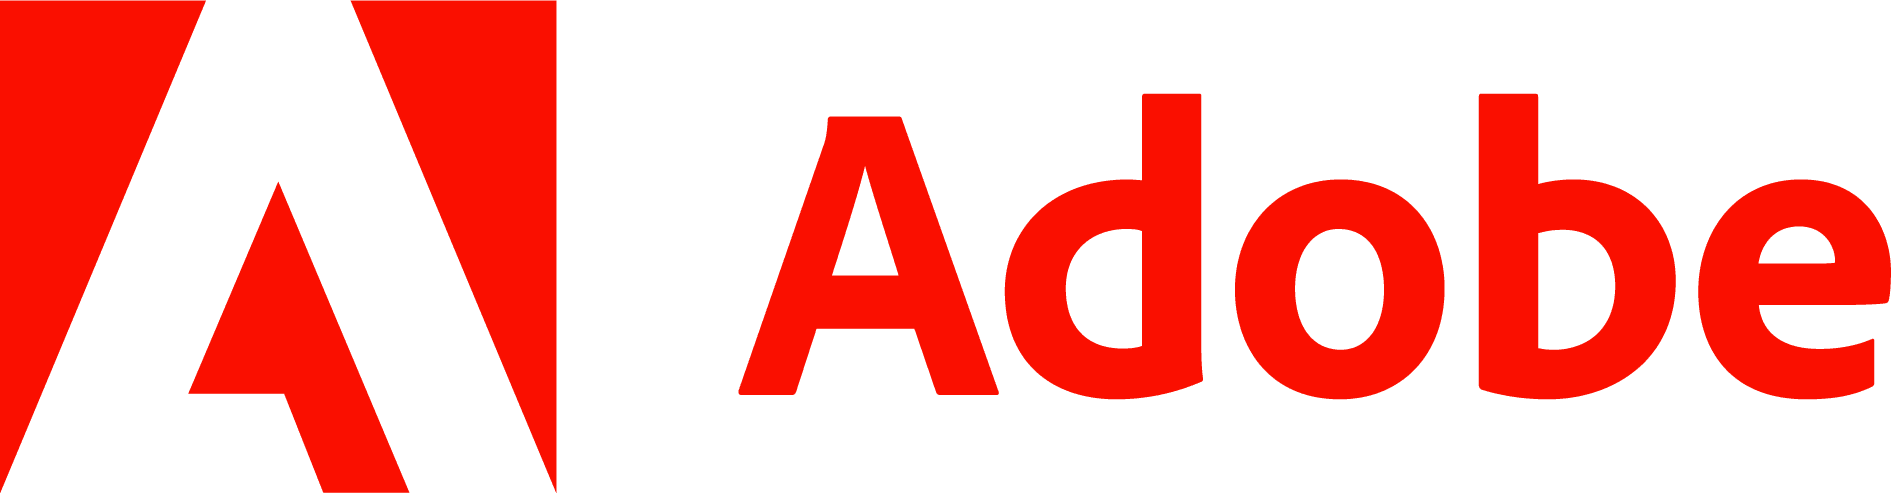 Adobe_logo_PNG6.png